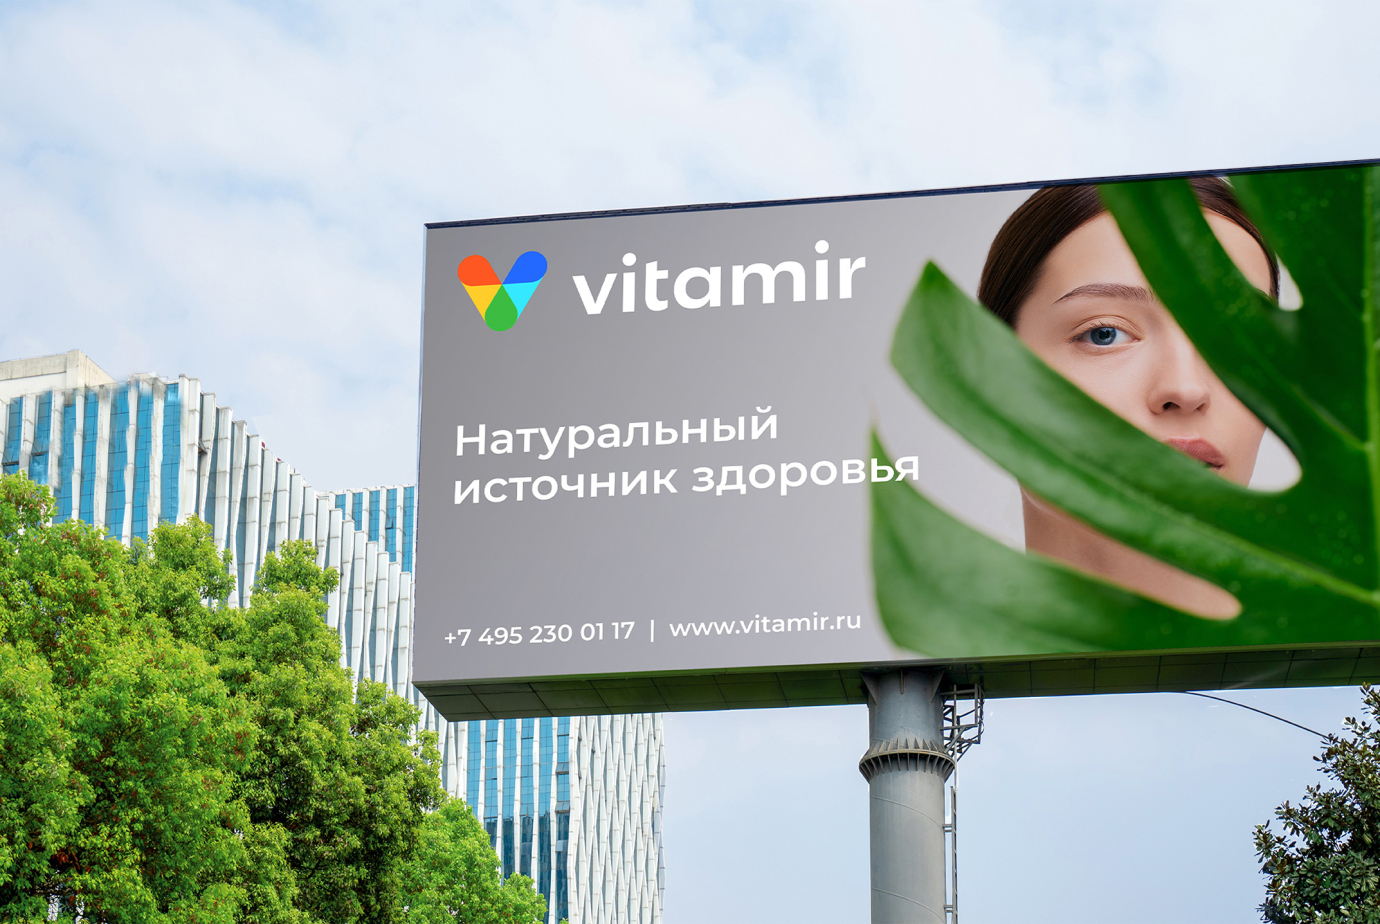 Создание визуальной концепции бренда Vitamir